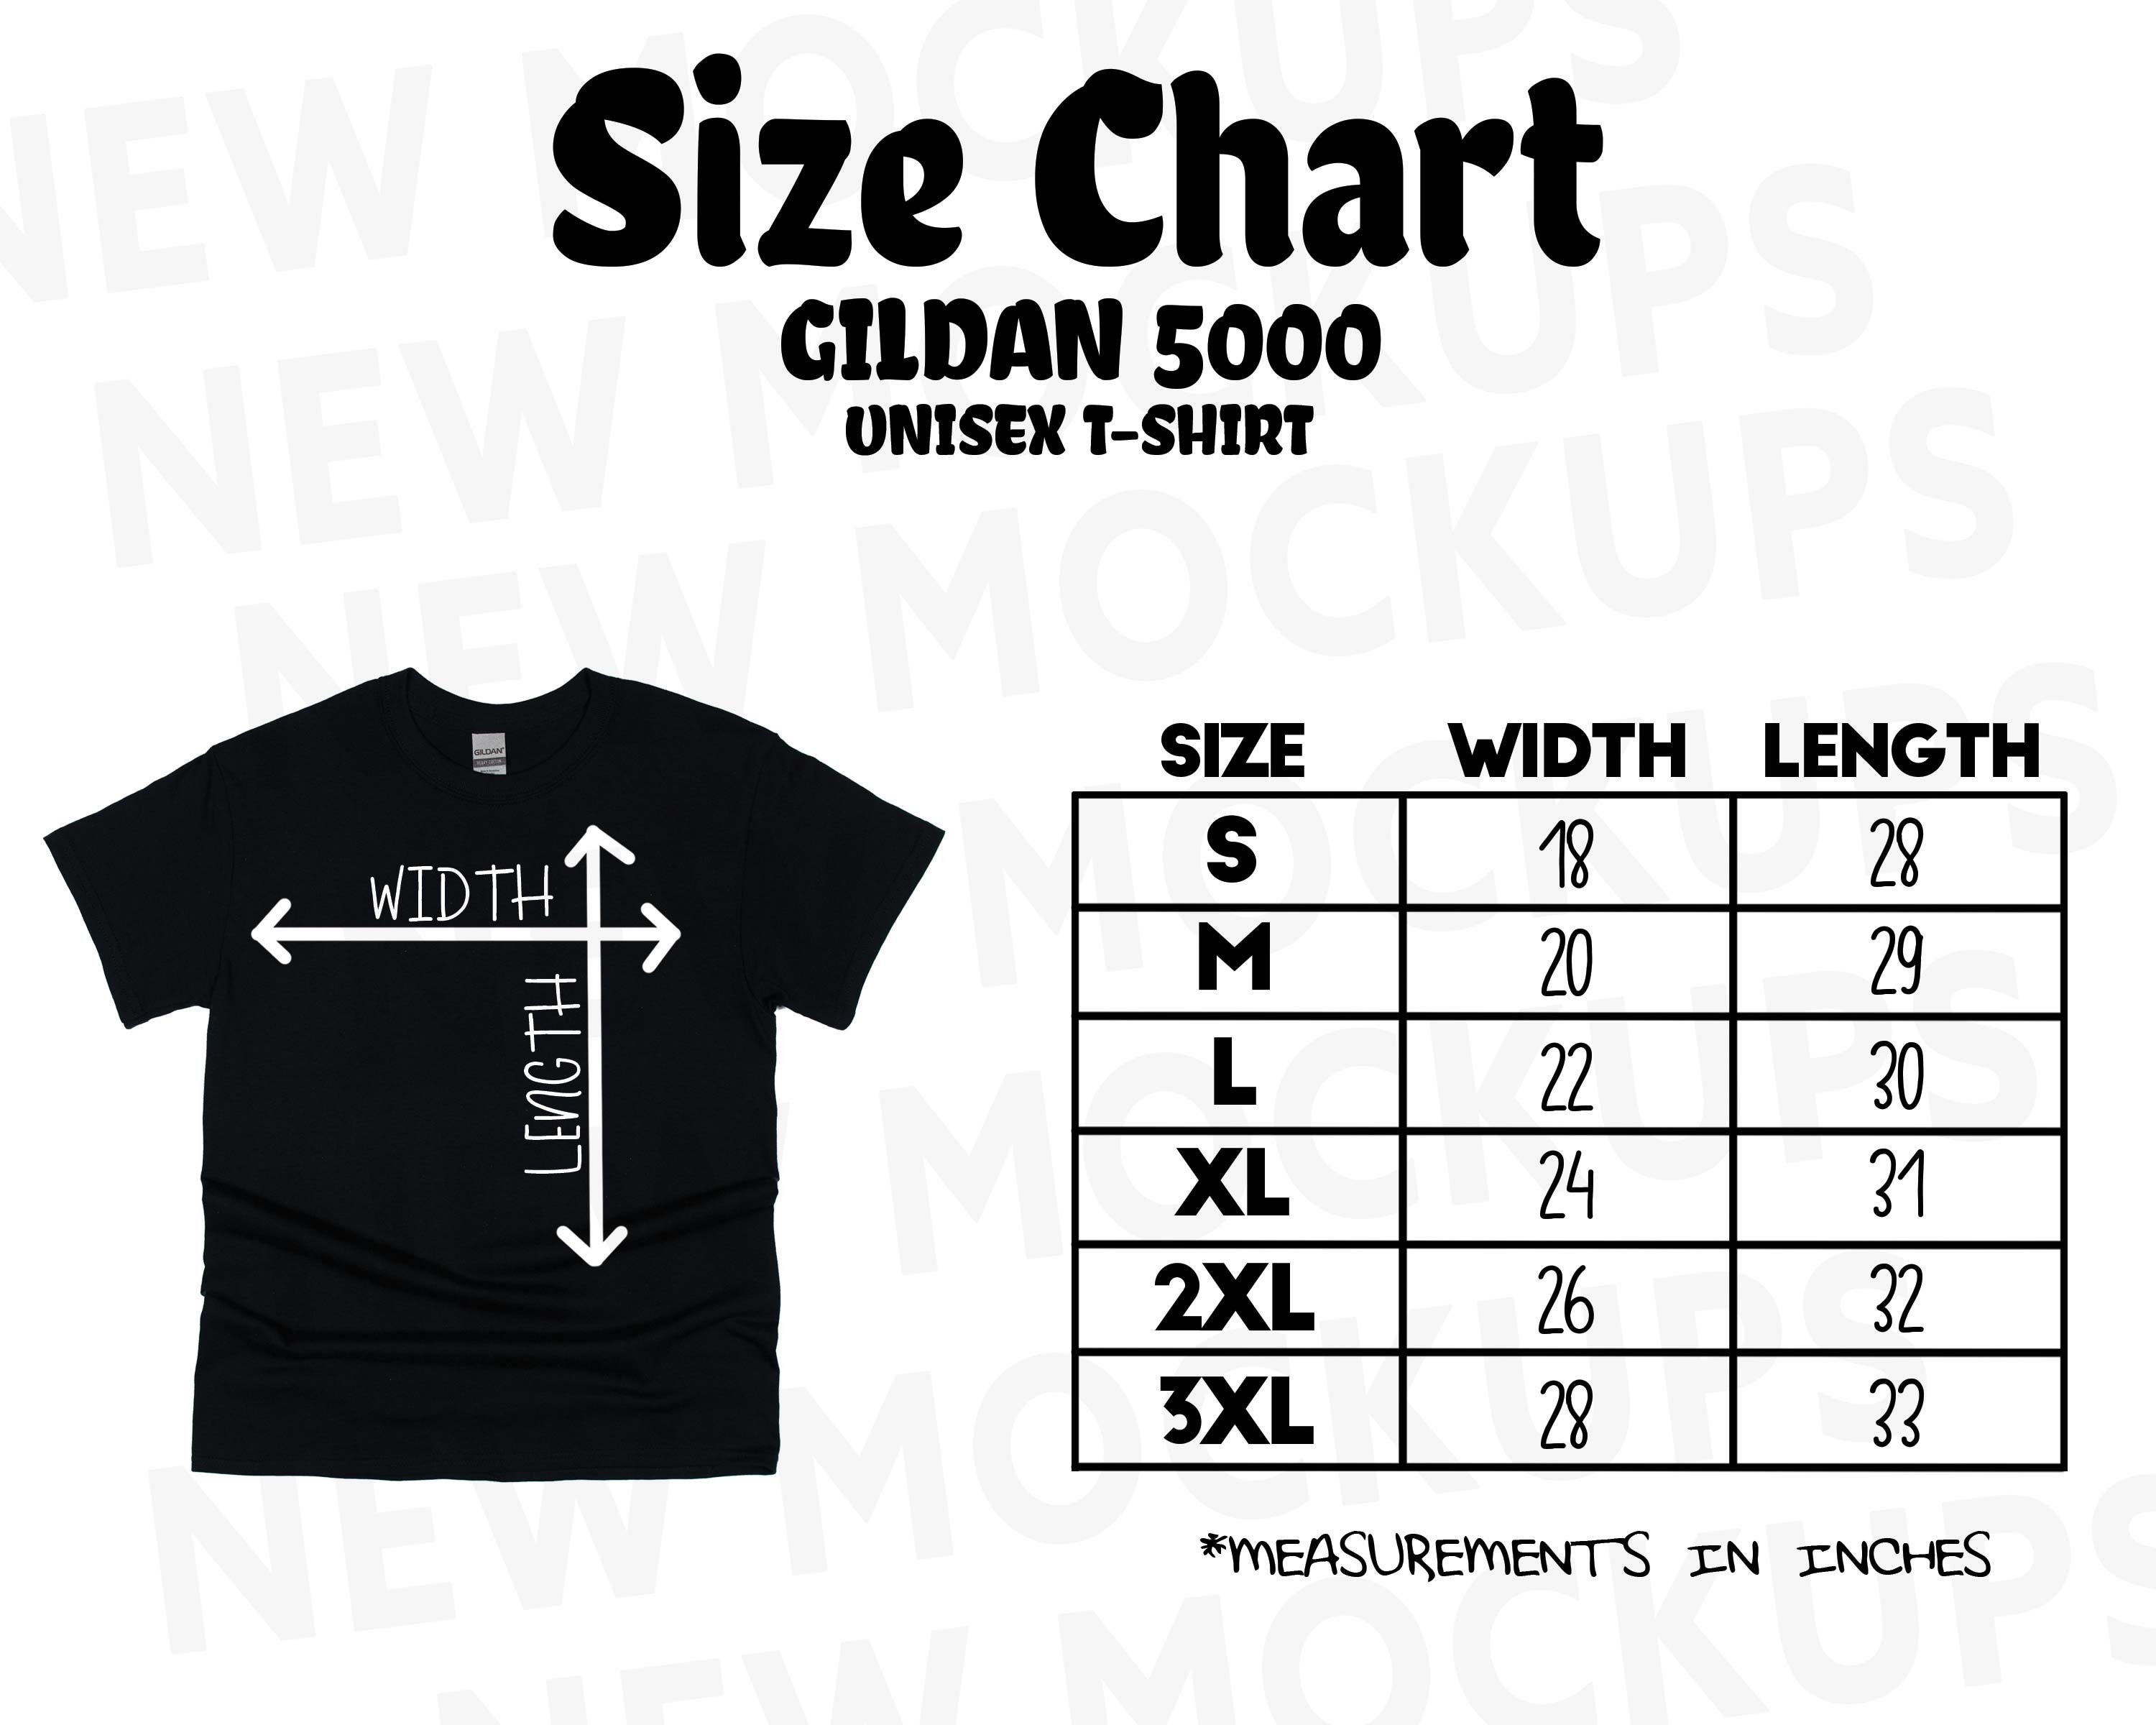 gildan-5000-size-chart-unisex-t-shirt-size-chart-size-chart-etsy